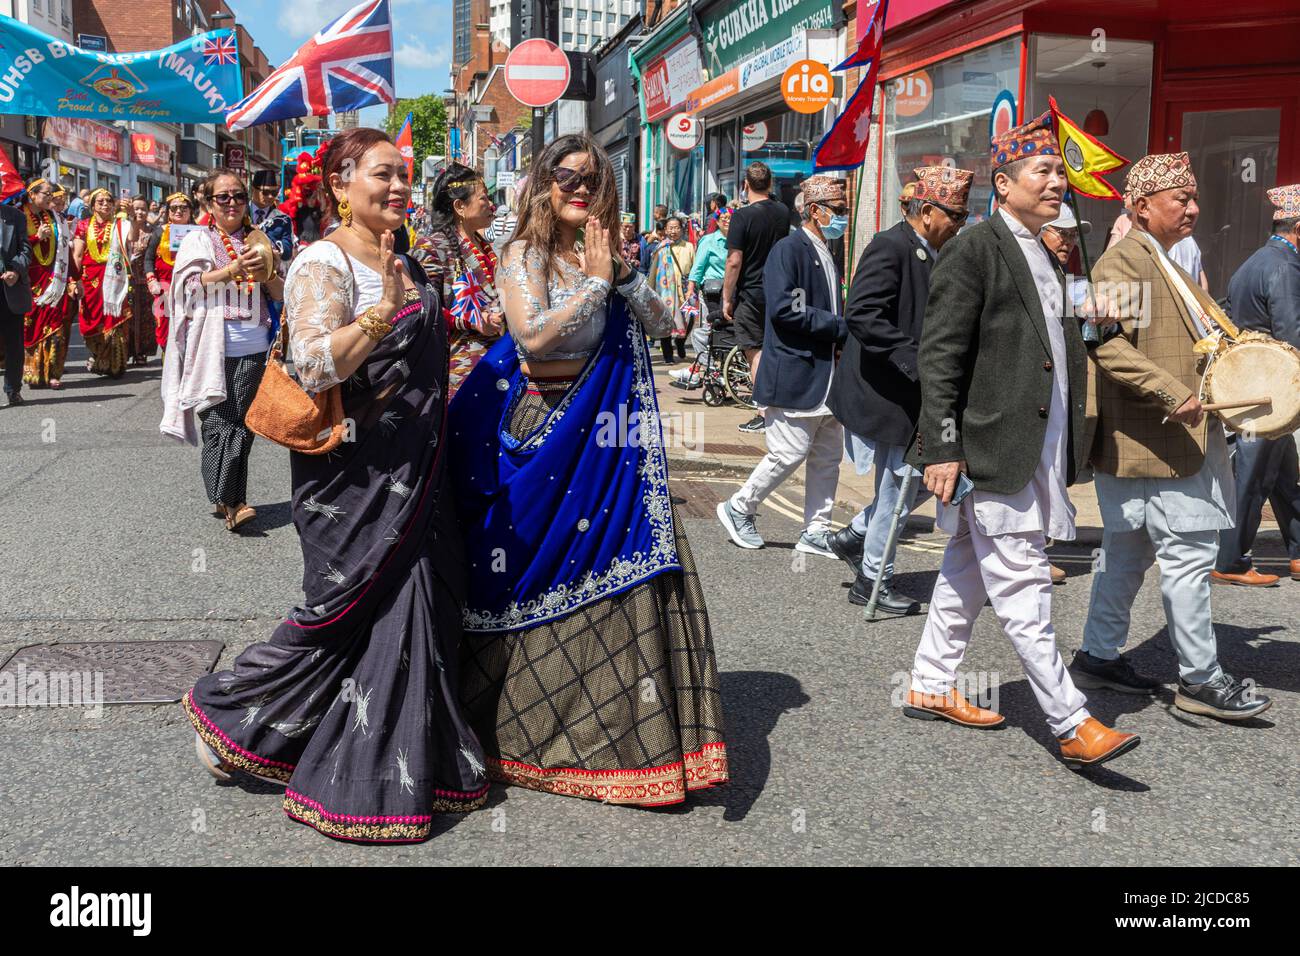 Le peuple népalais, groupe ethnique Magar, dans le Grand Parade à Victoria Day, un événement annuel à Aldershot, Hampshire, Angleterre, Royaume-Uni Banque D'Images